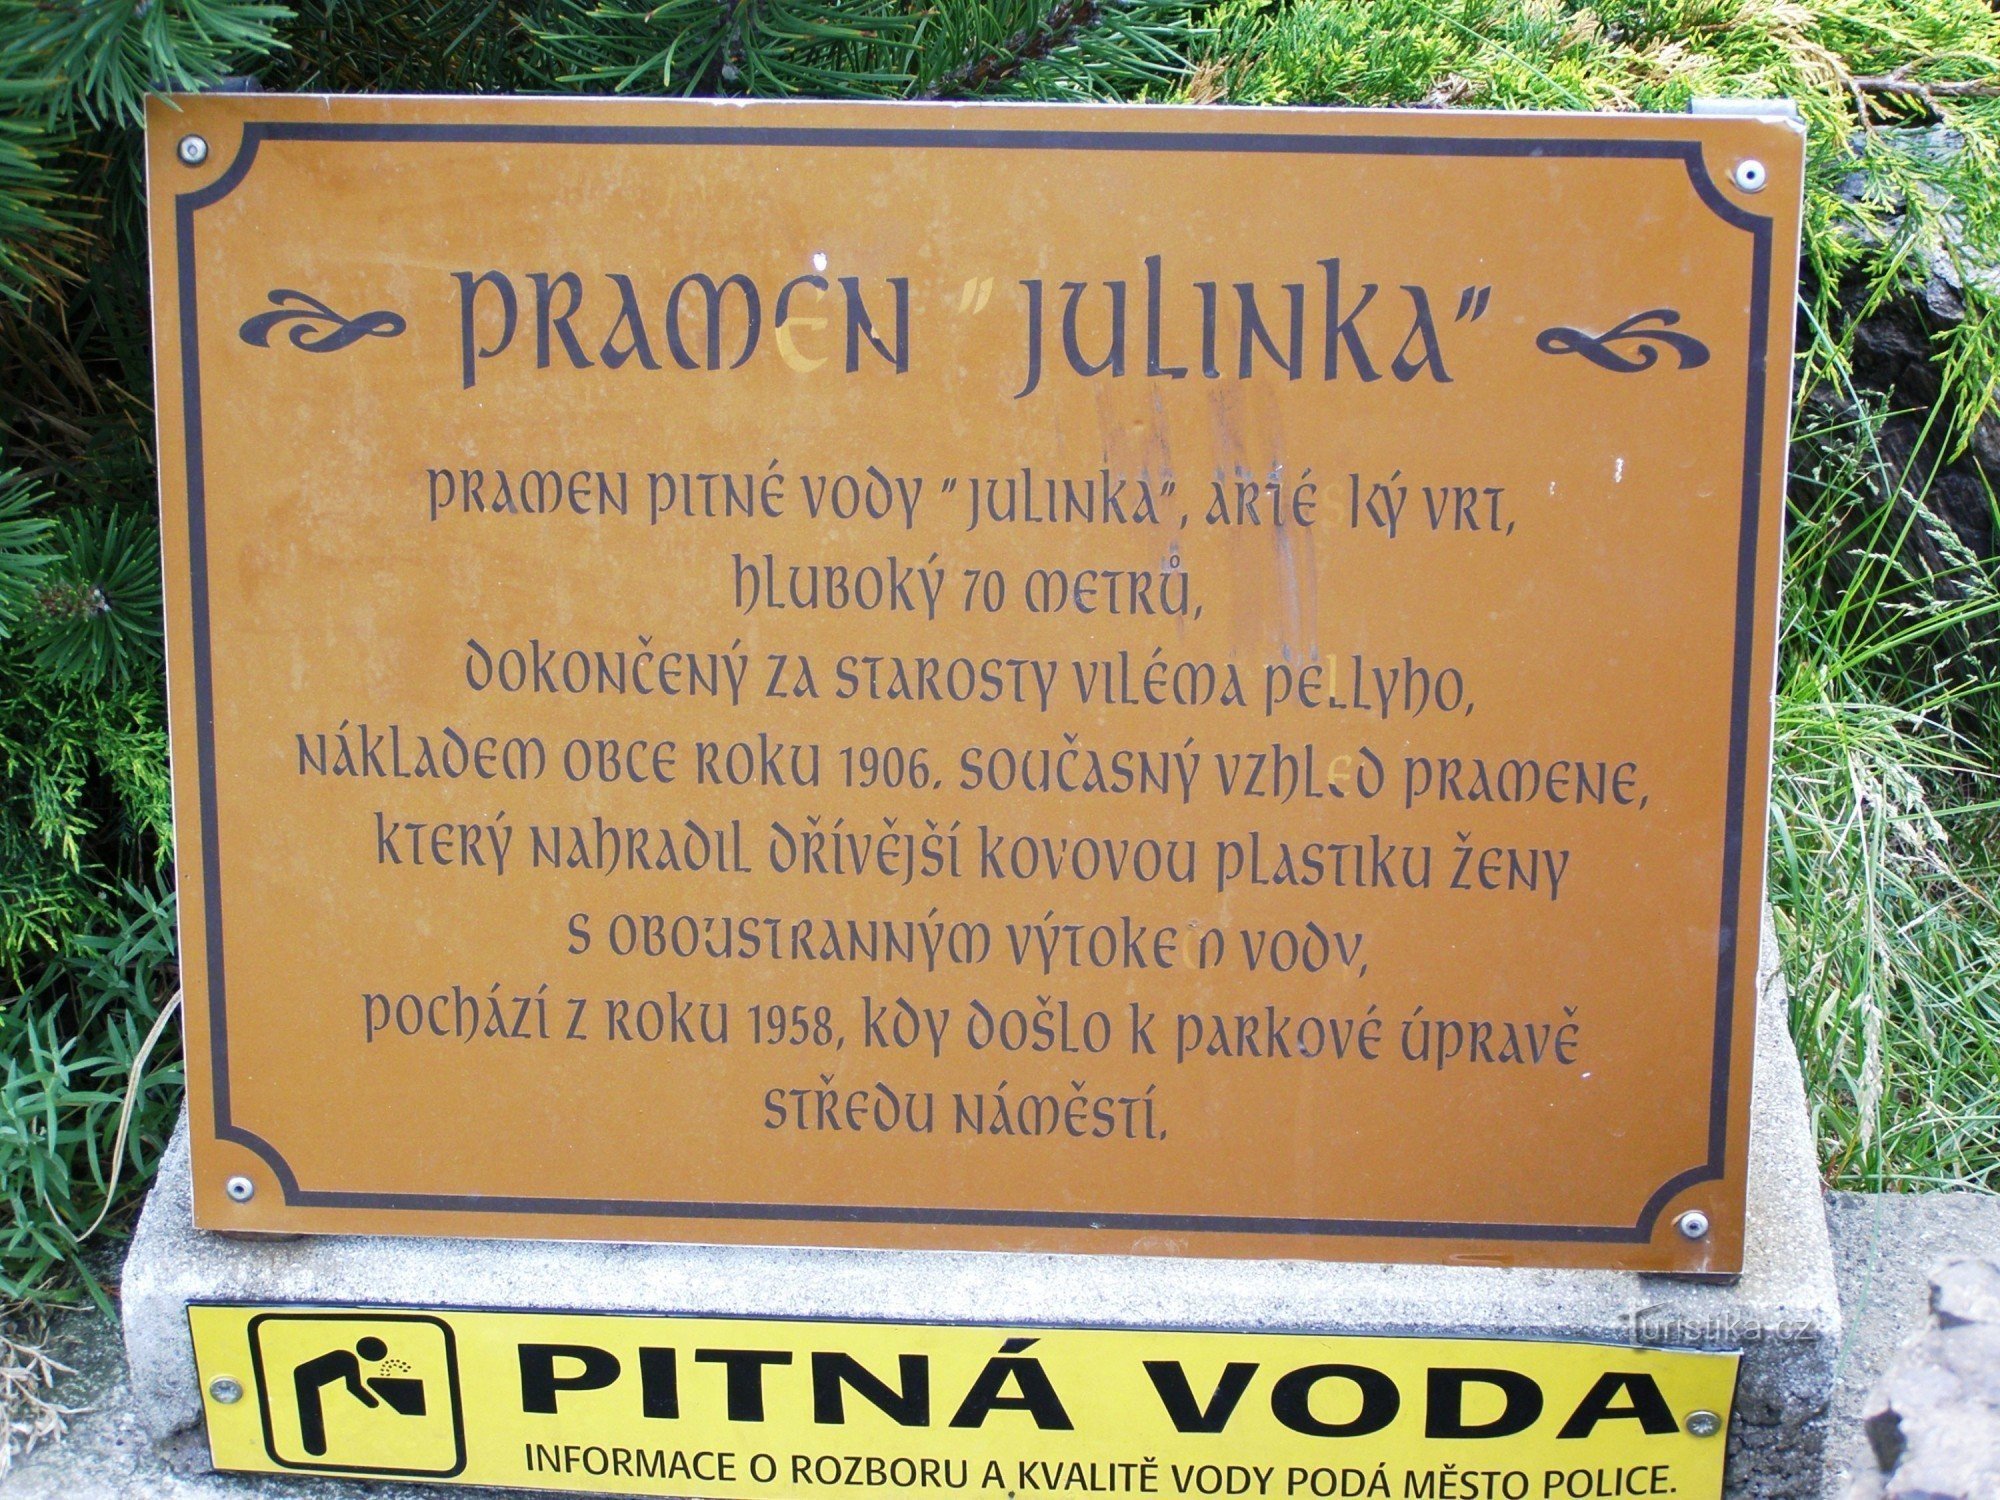 Hylde over Metují - spring Julinka